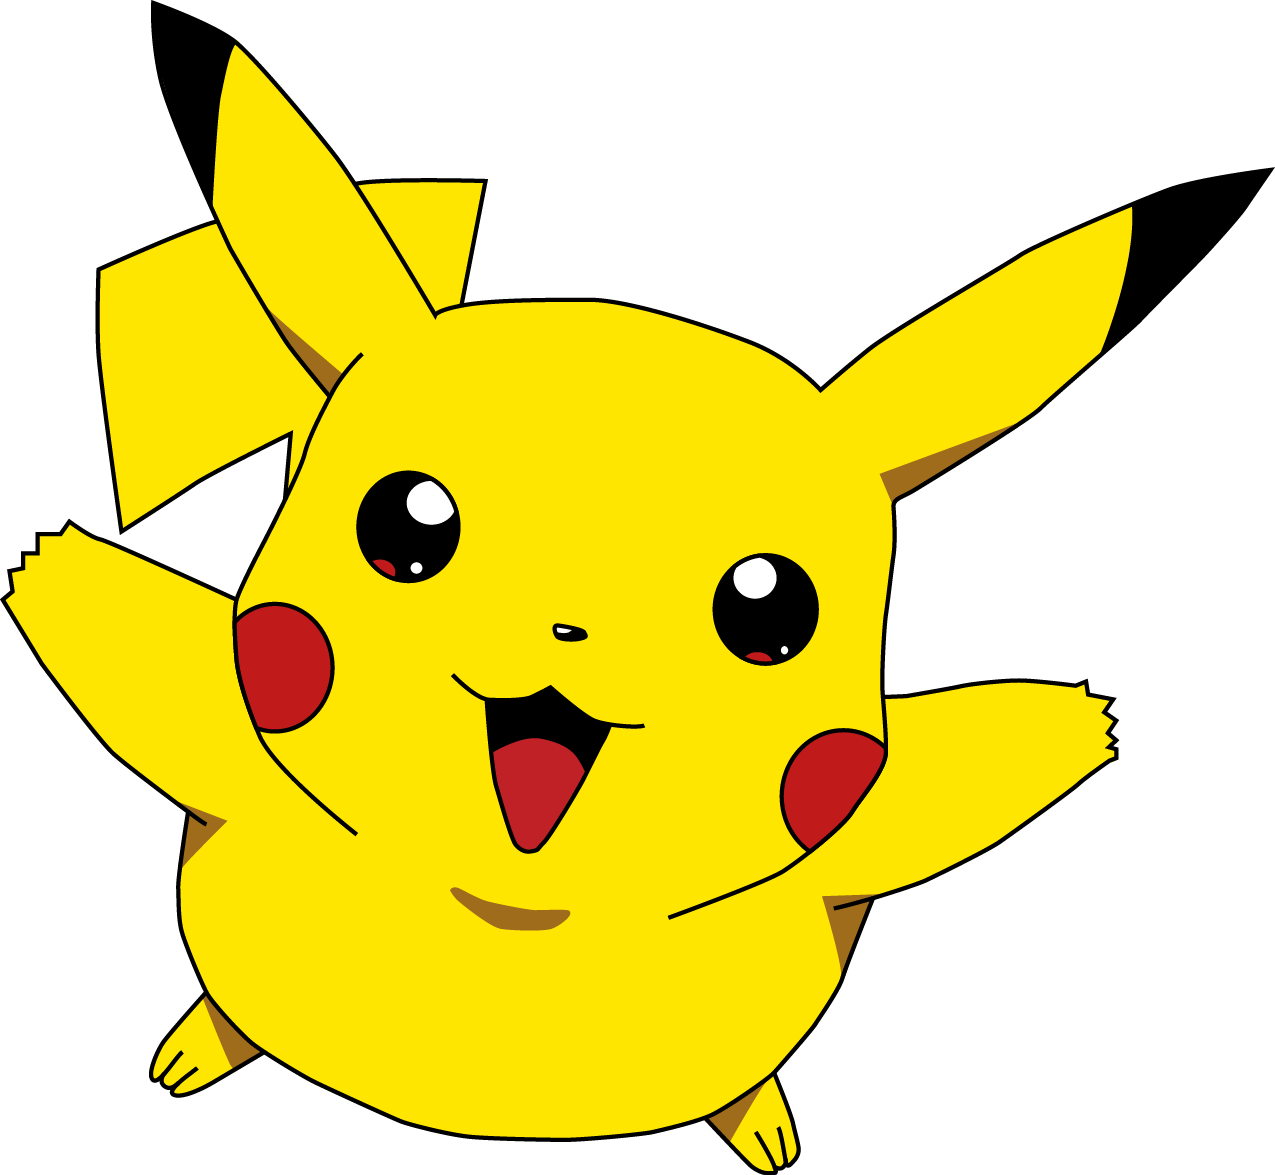 Pokemon PNG Image